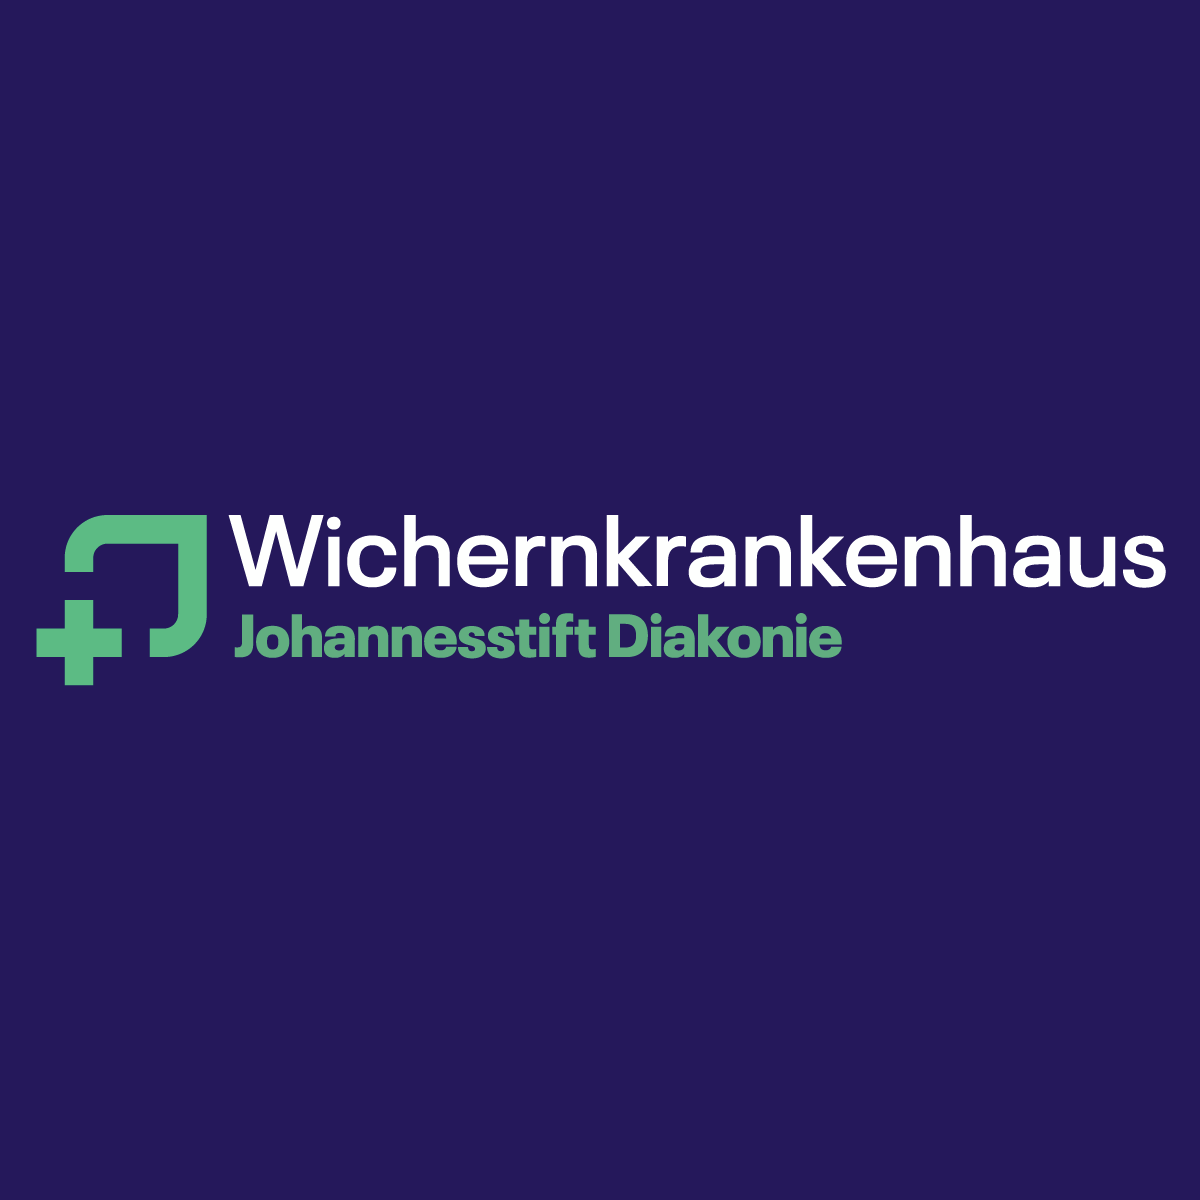 Wichernkrankenhaus in Berlin - Logo